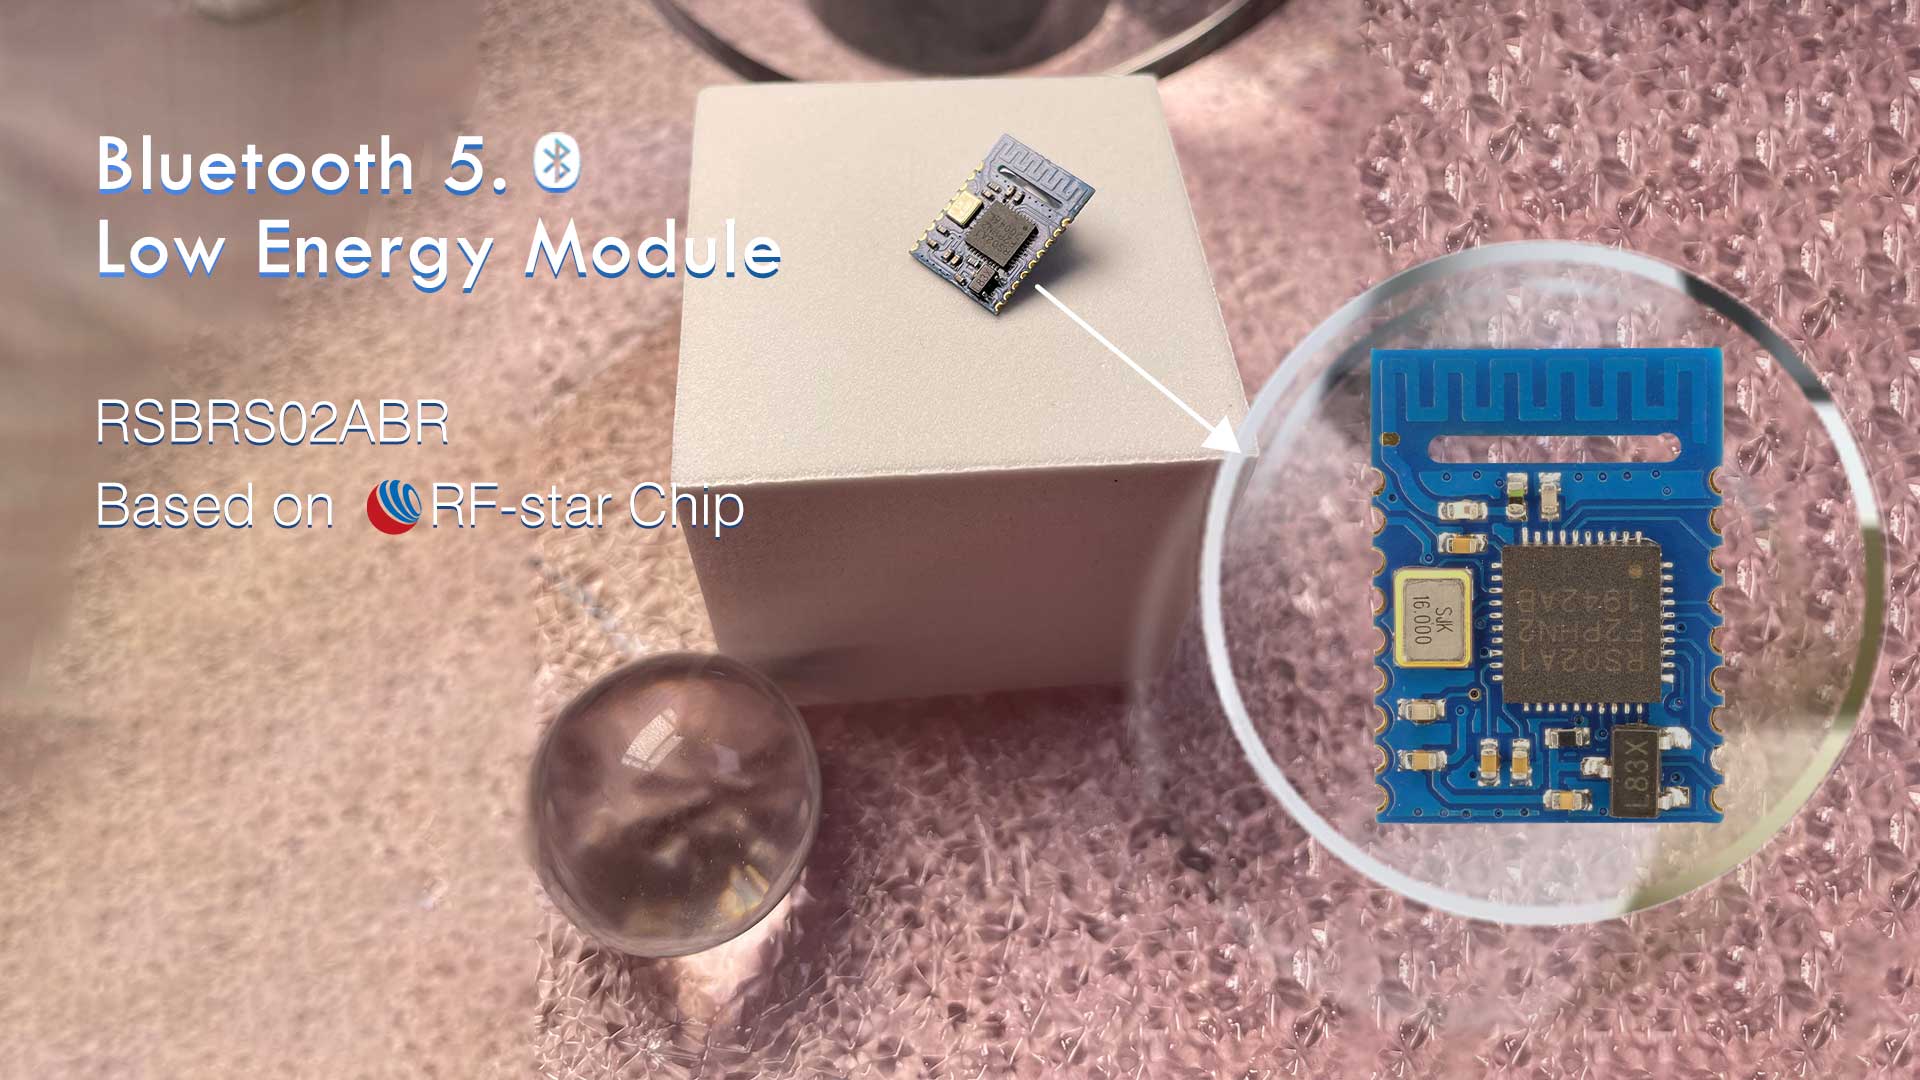 Módulo de baja energía Bluetooth 5.0 RSBRS02ABR basado en chip RF-star